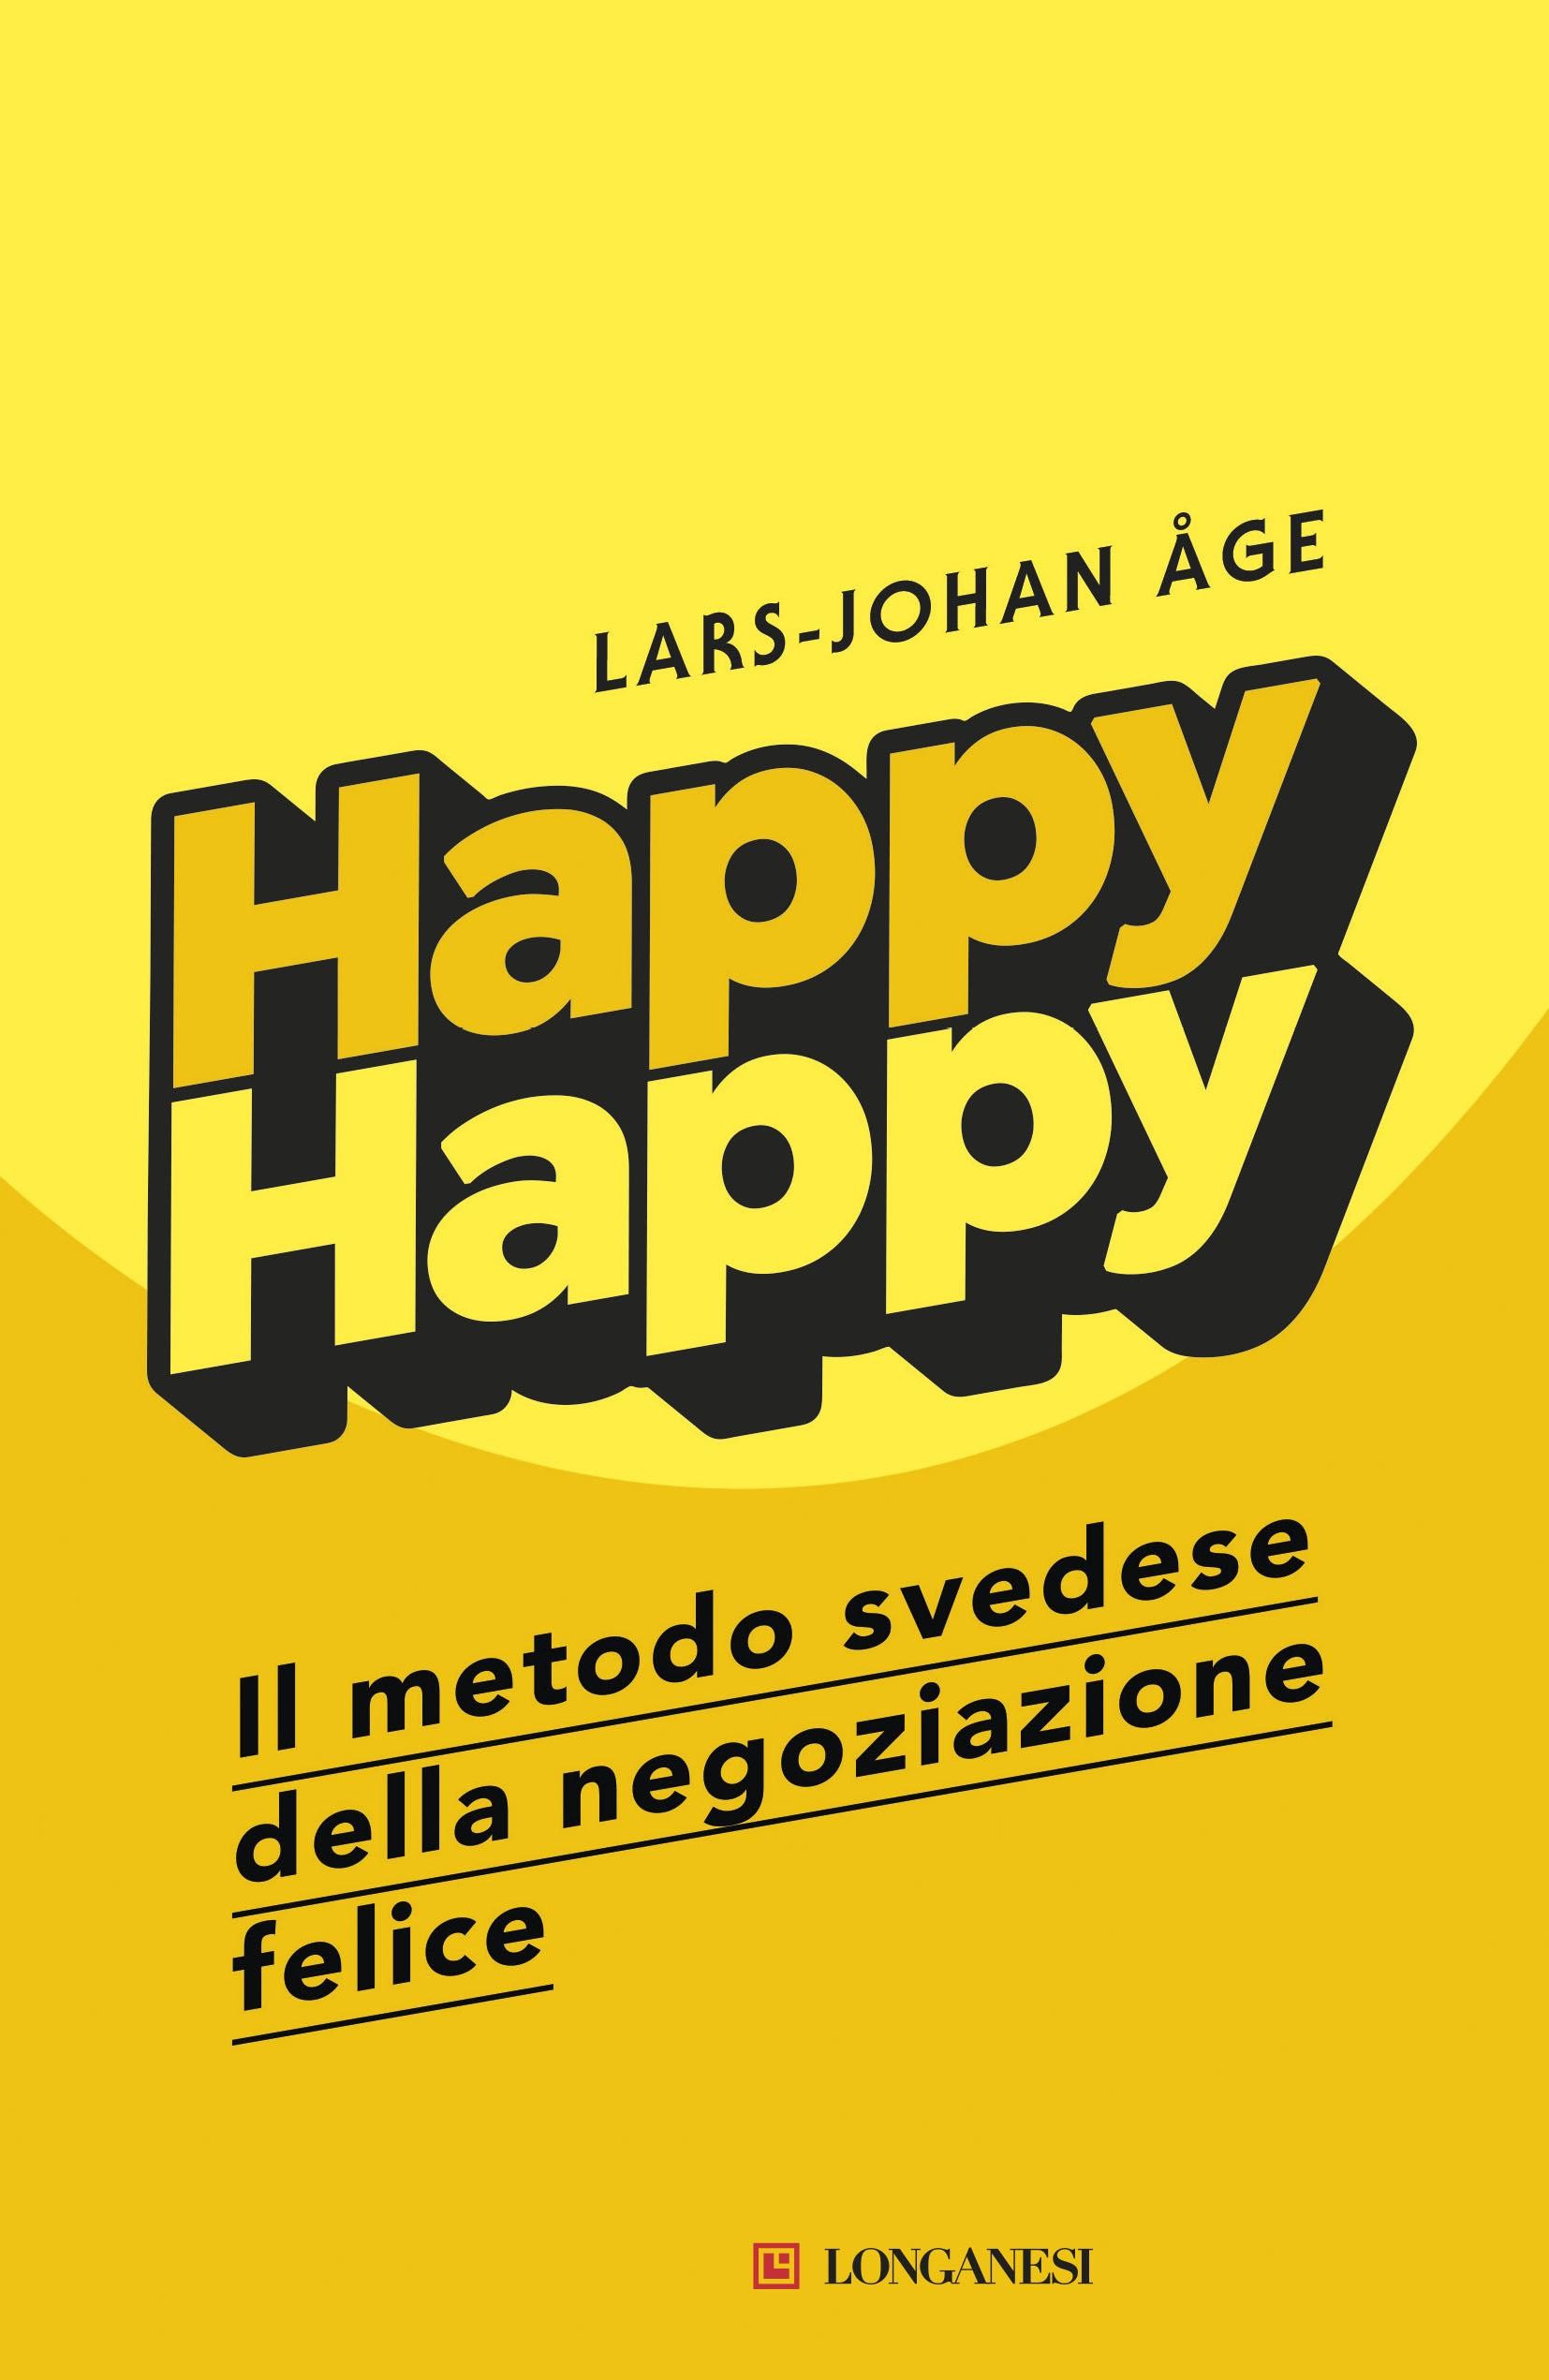 Happy Happy - Edizione italiana - Librerie.coop